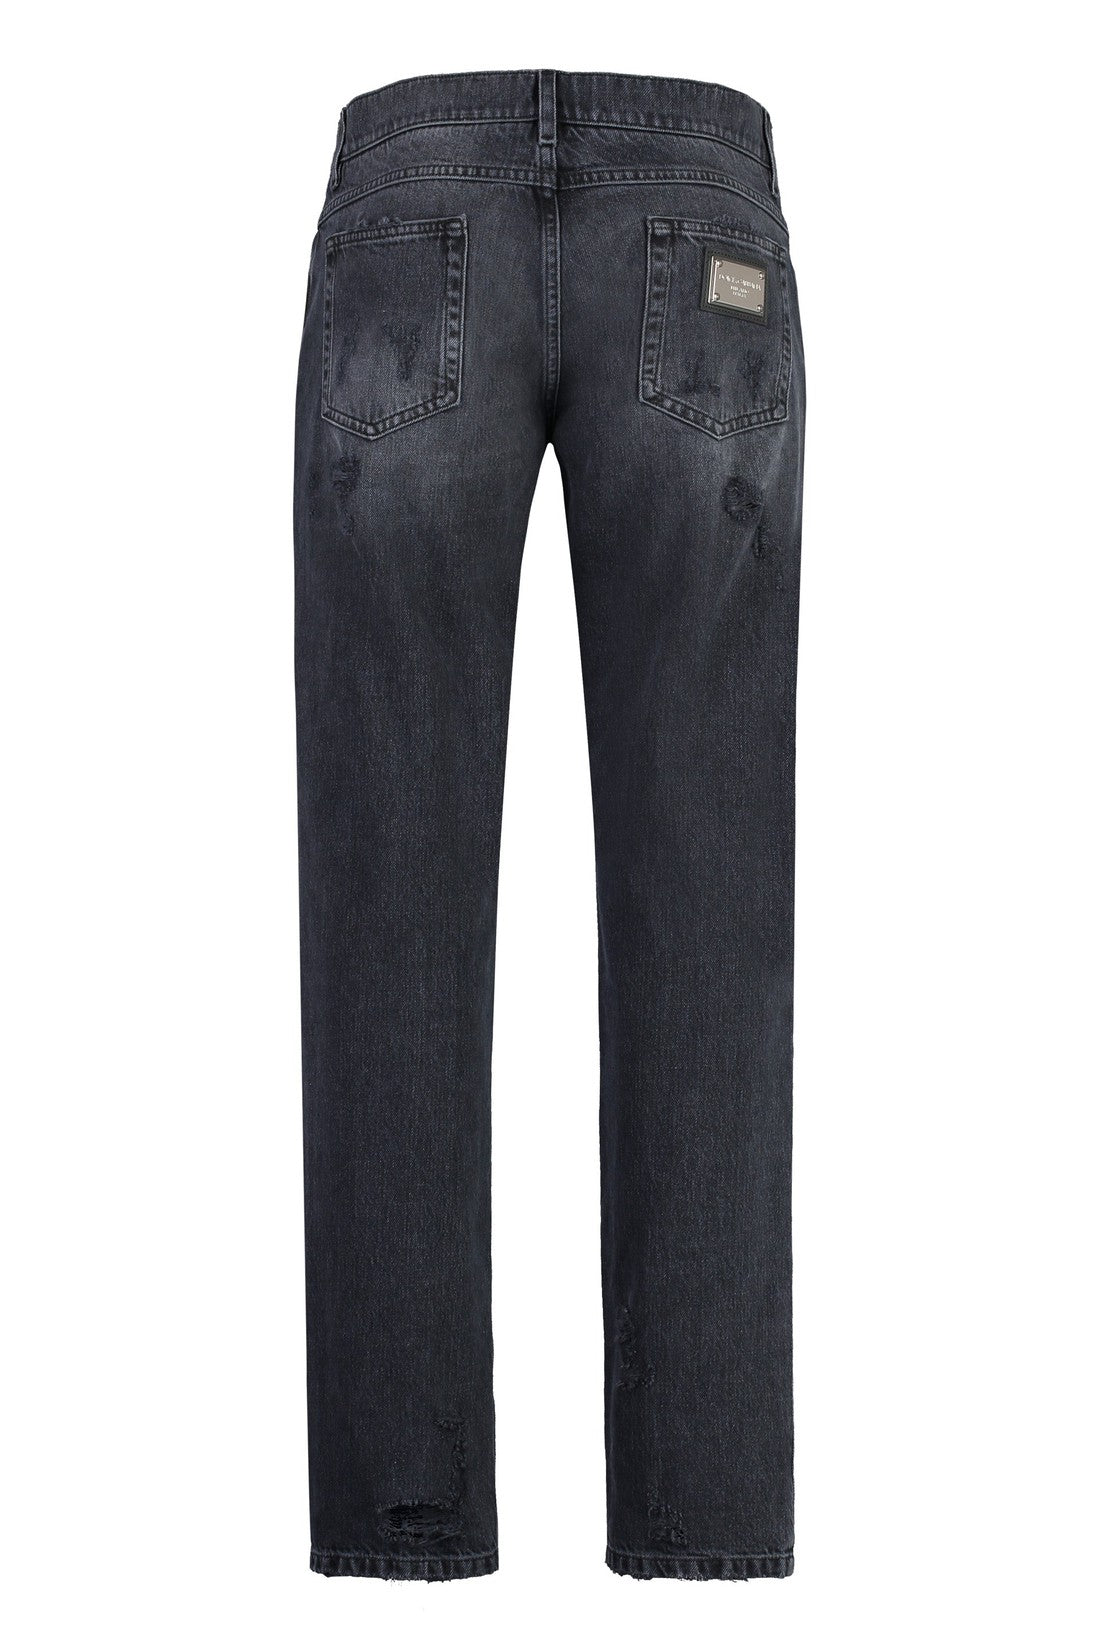 Dolce & Gabbana-OUTLET-SALE-Regular-fit cotton jeans-ARCHIVIST